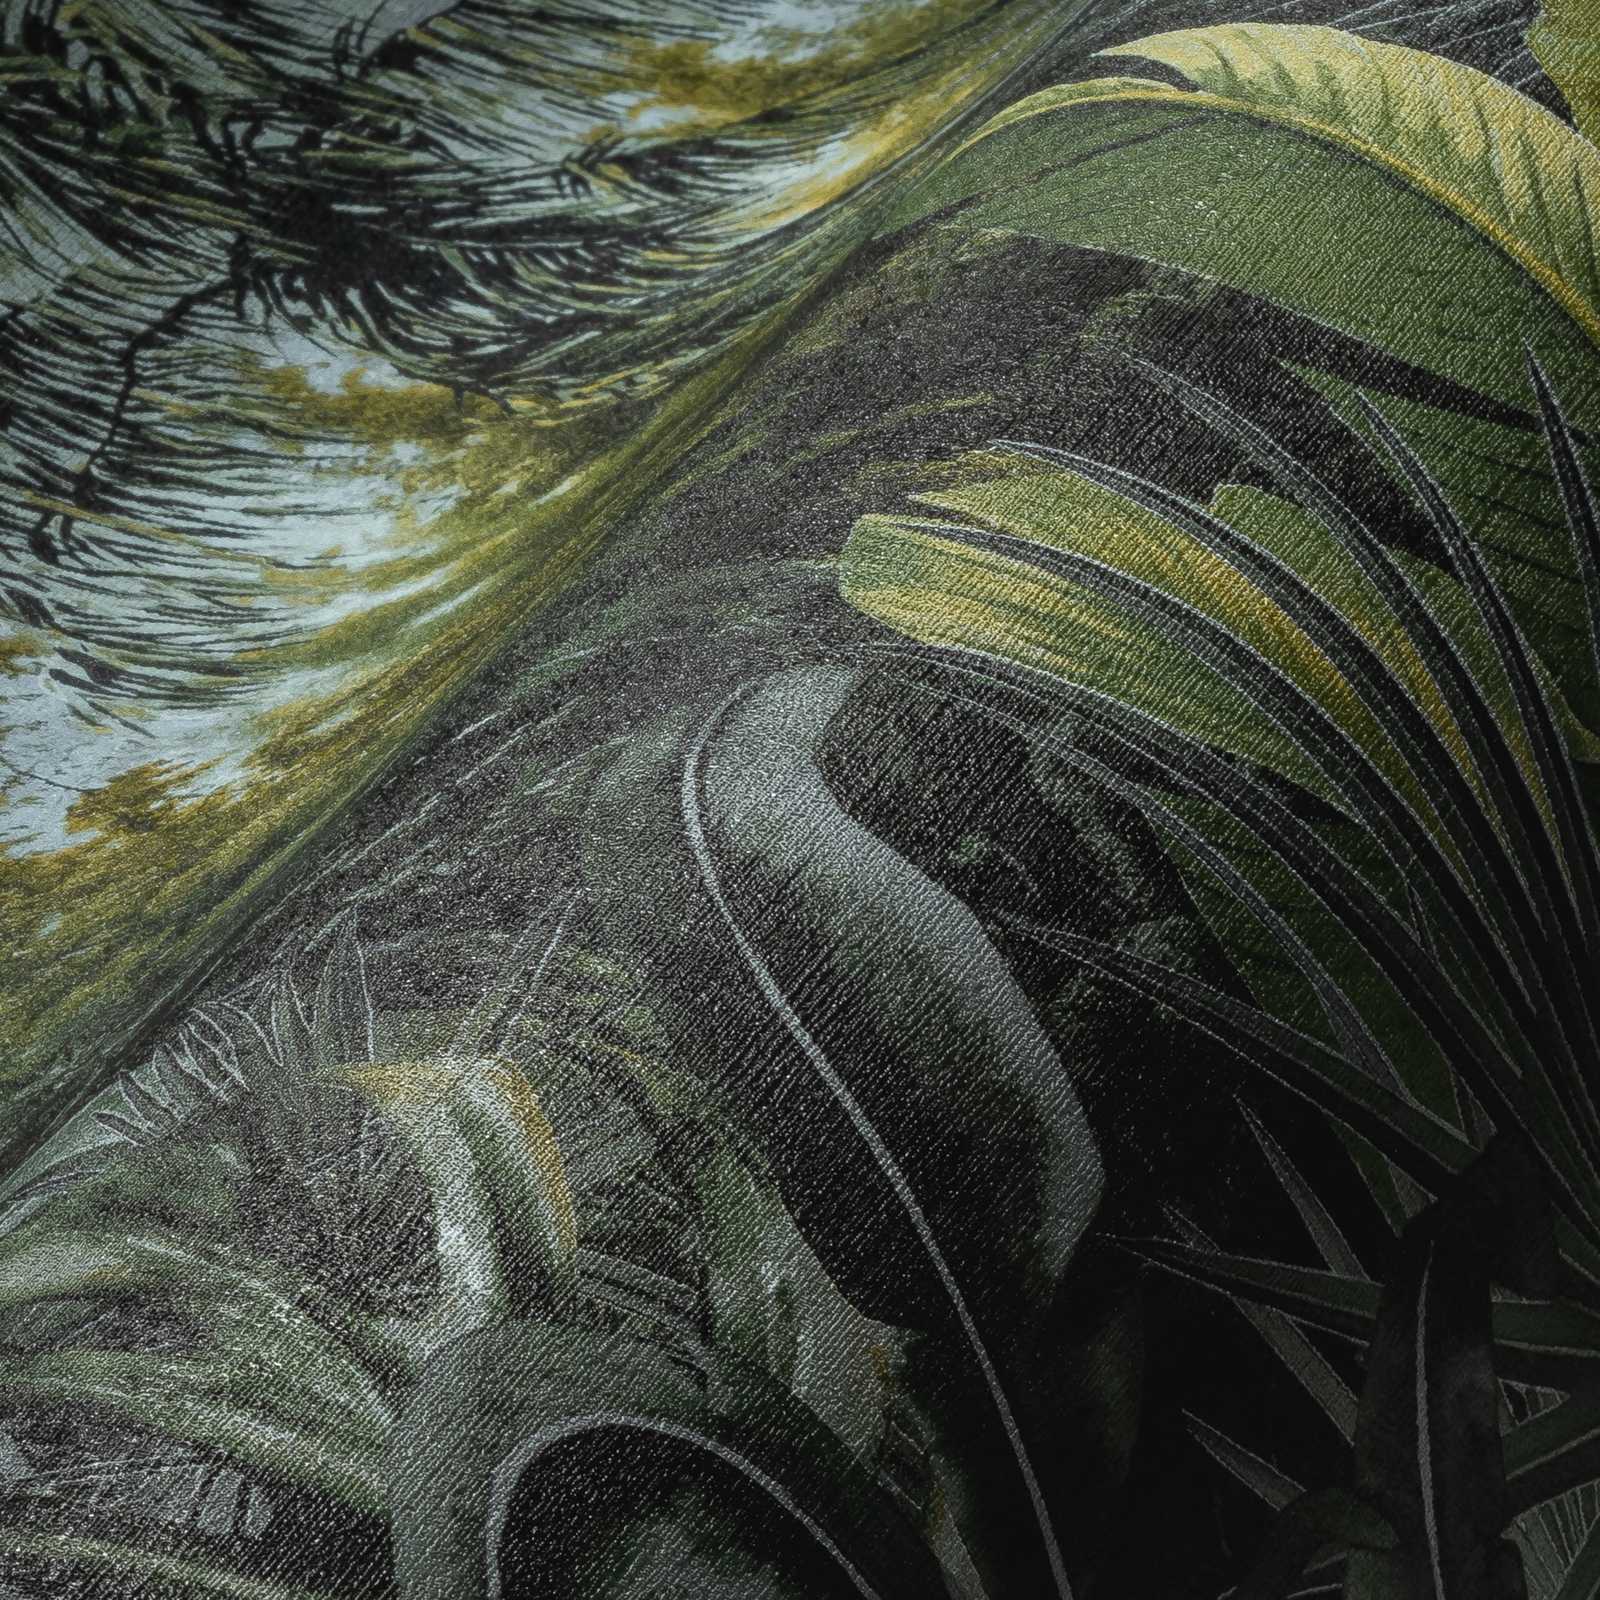             Vliesbehang jungle met palmen & bladeren design - groen
        